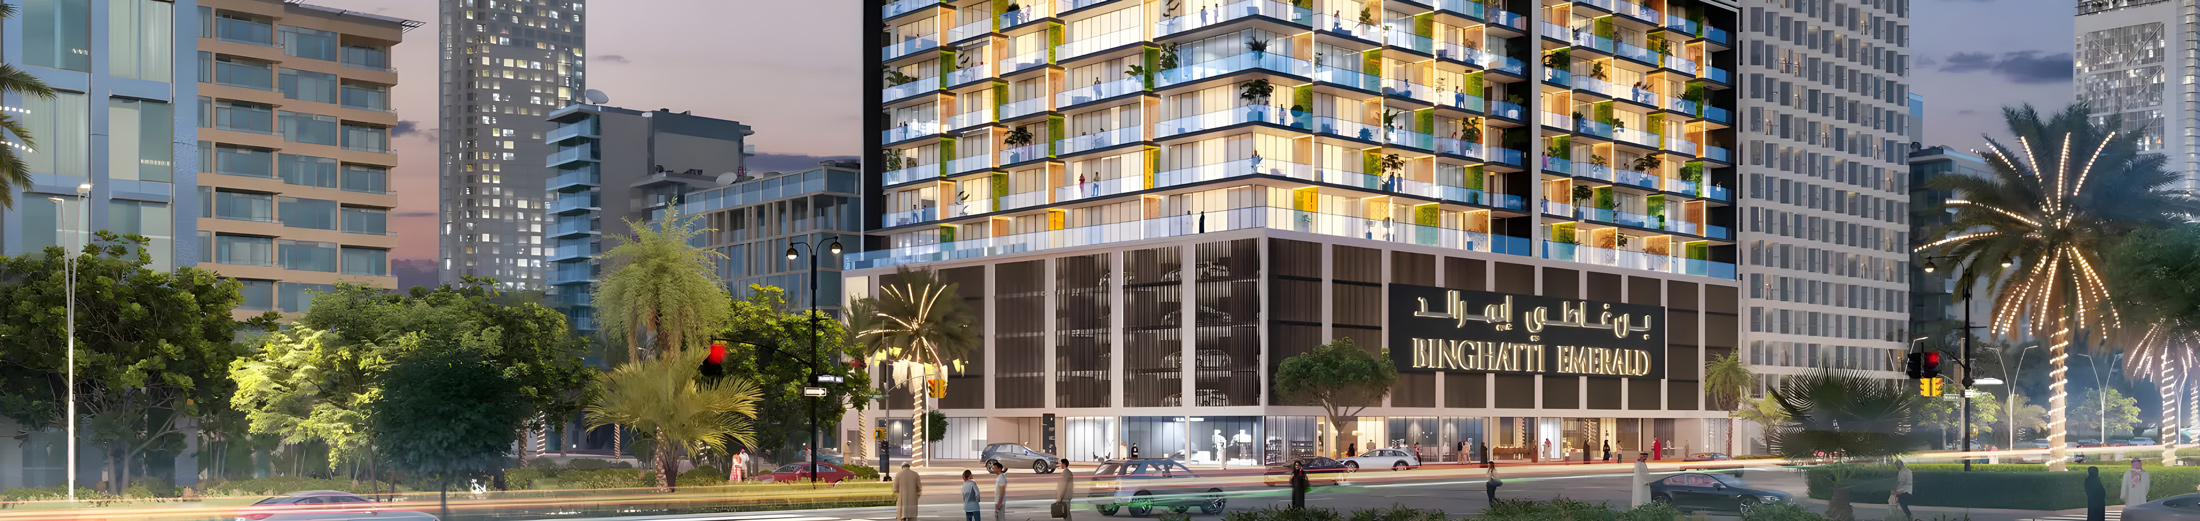 Binghatti Emerald Apartments for Sale in Jumeirah Village Circle Dubai